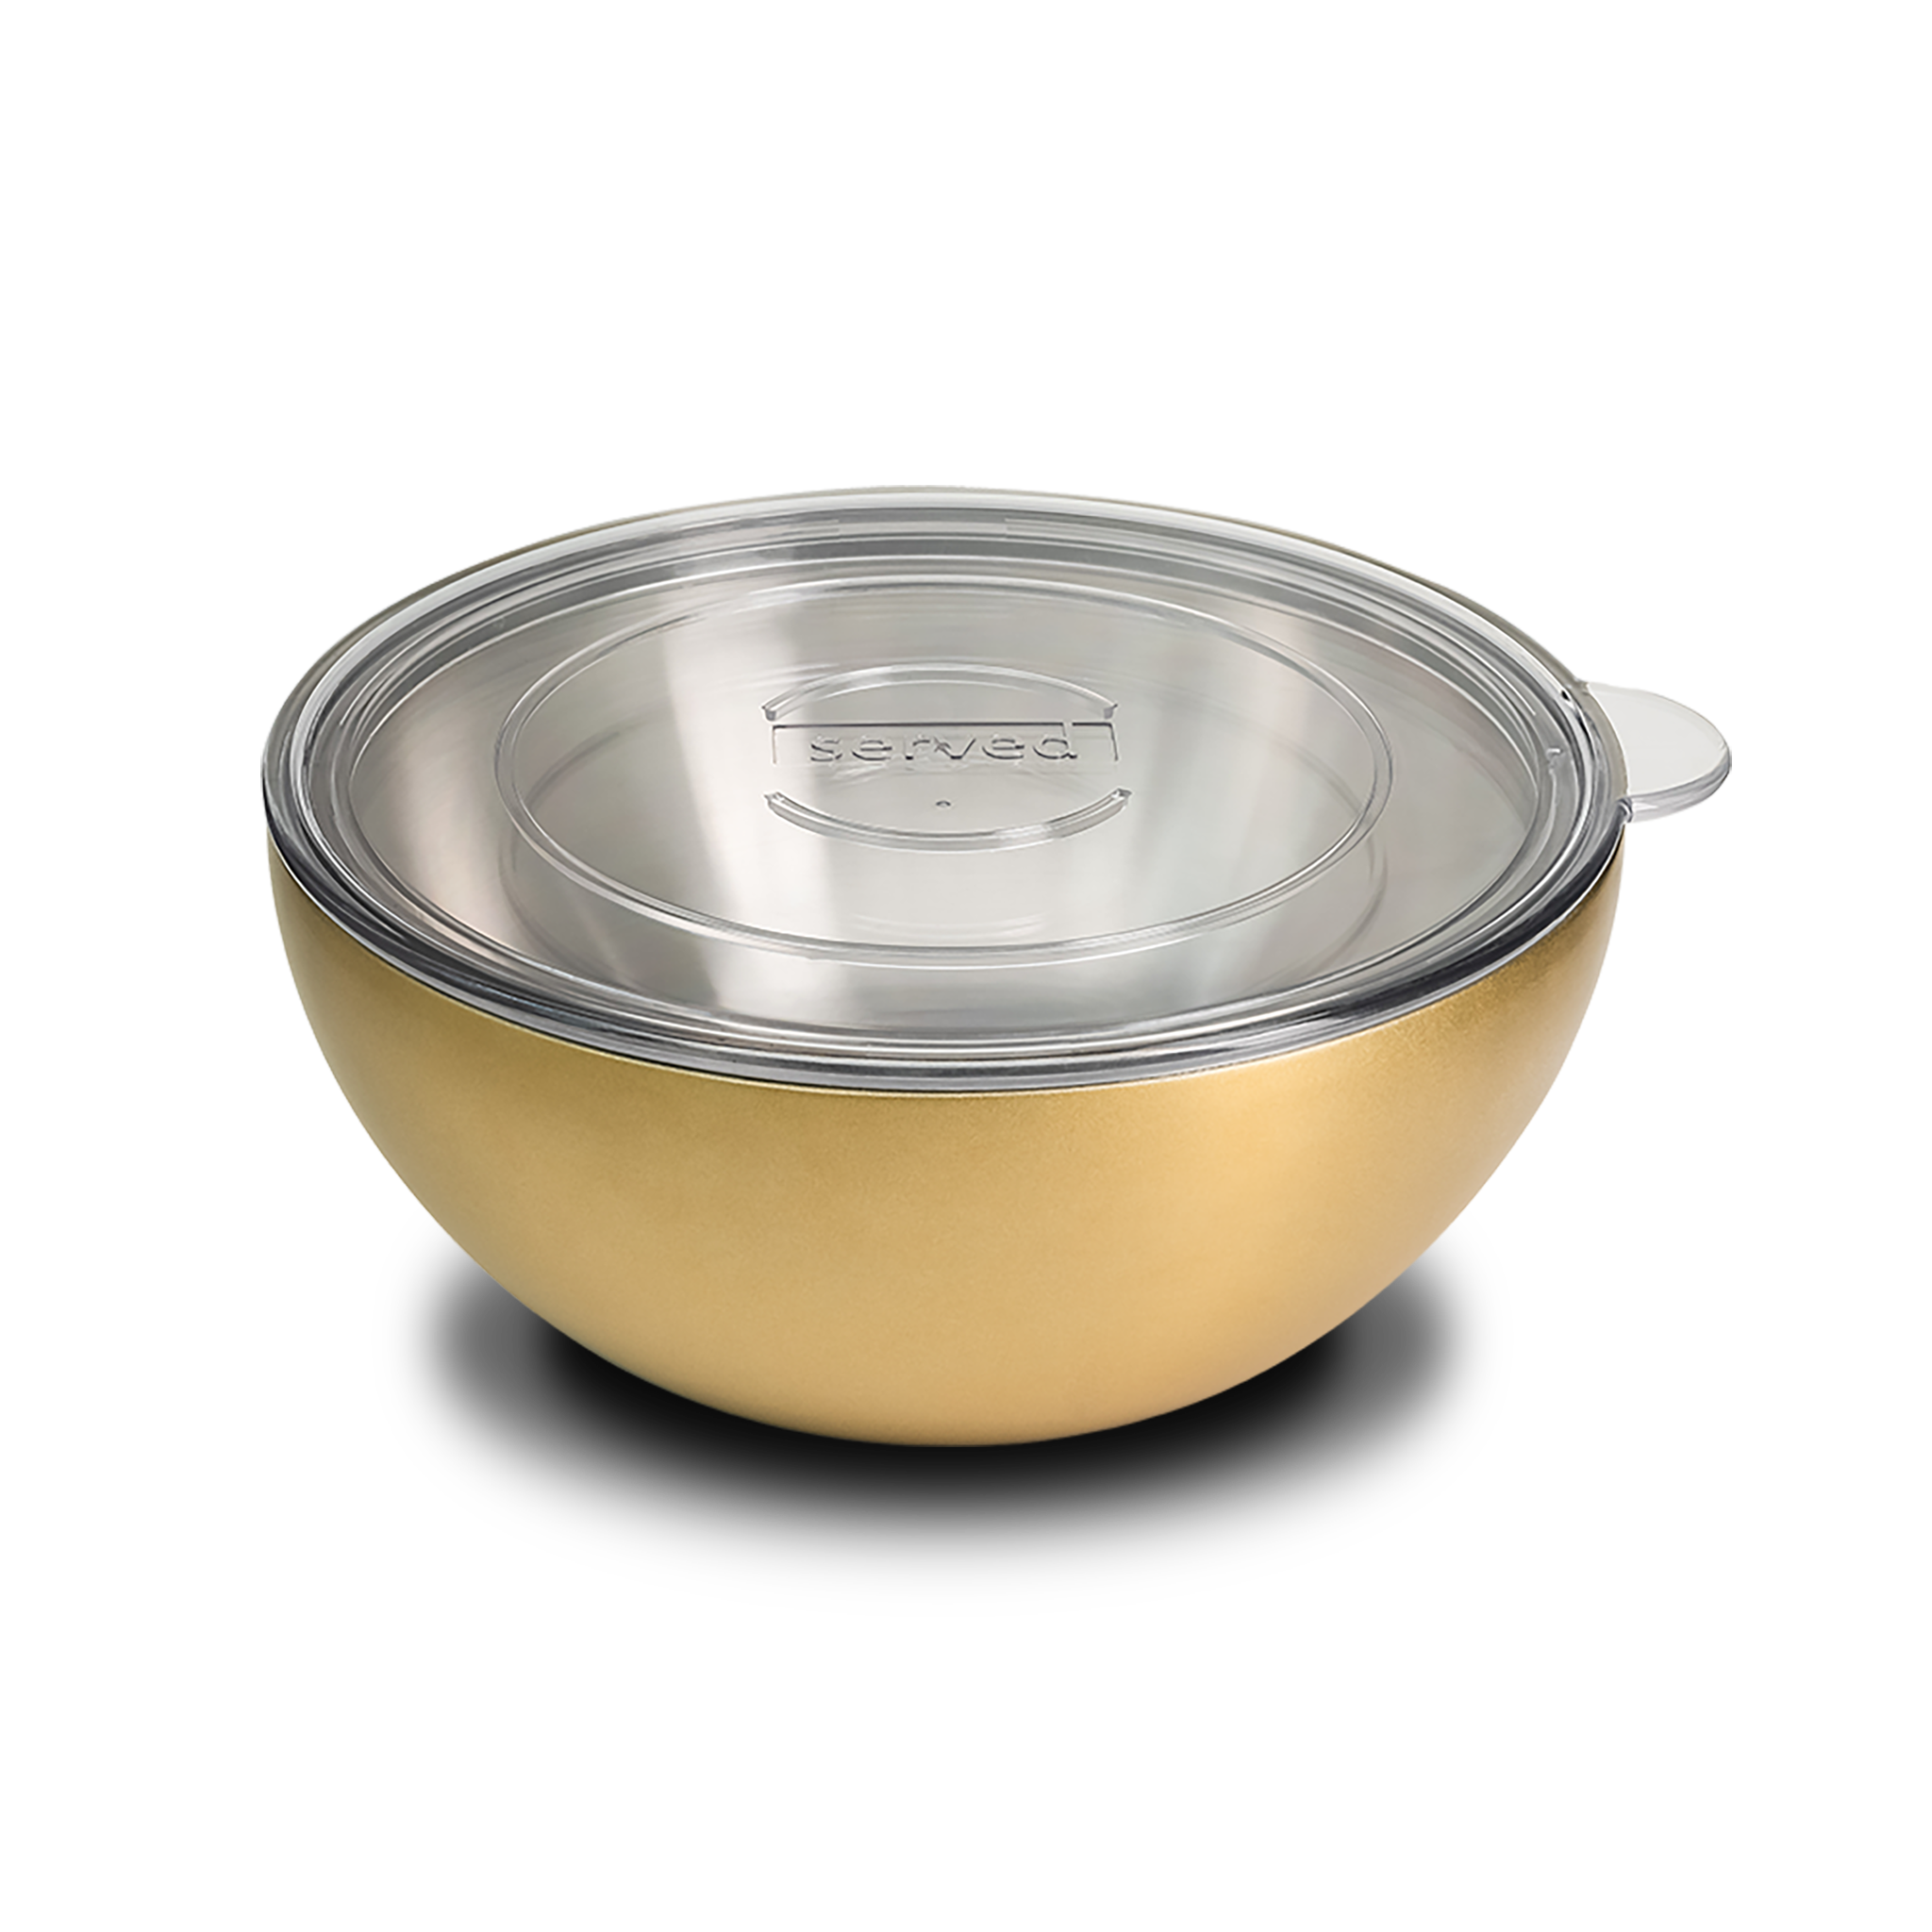 https://shopserved.com/cdn/shop/products/served-large-bowl-Golden-2048px.png?v=1670295206